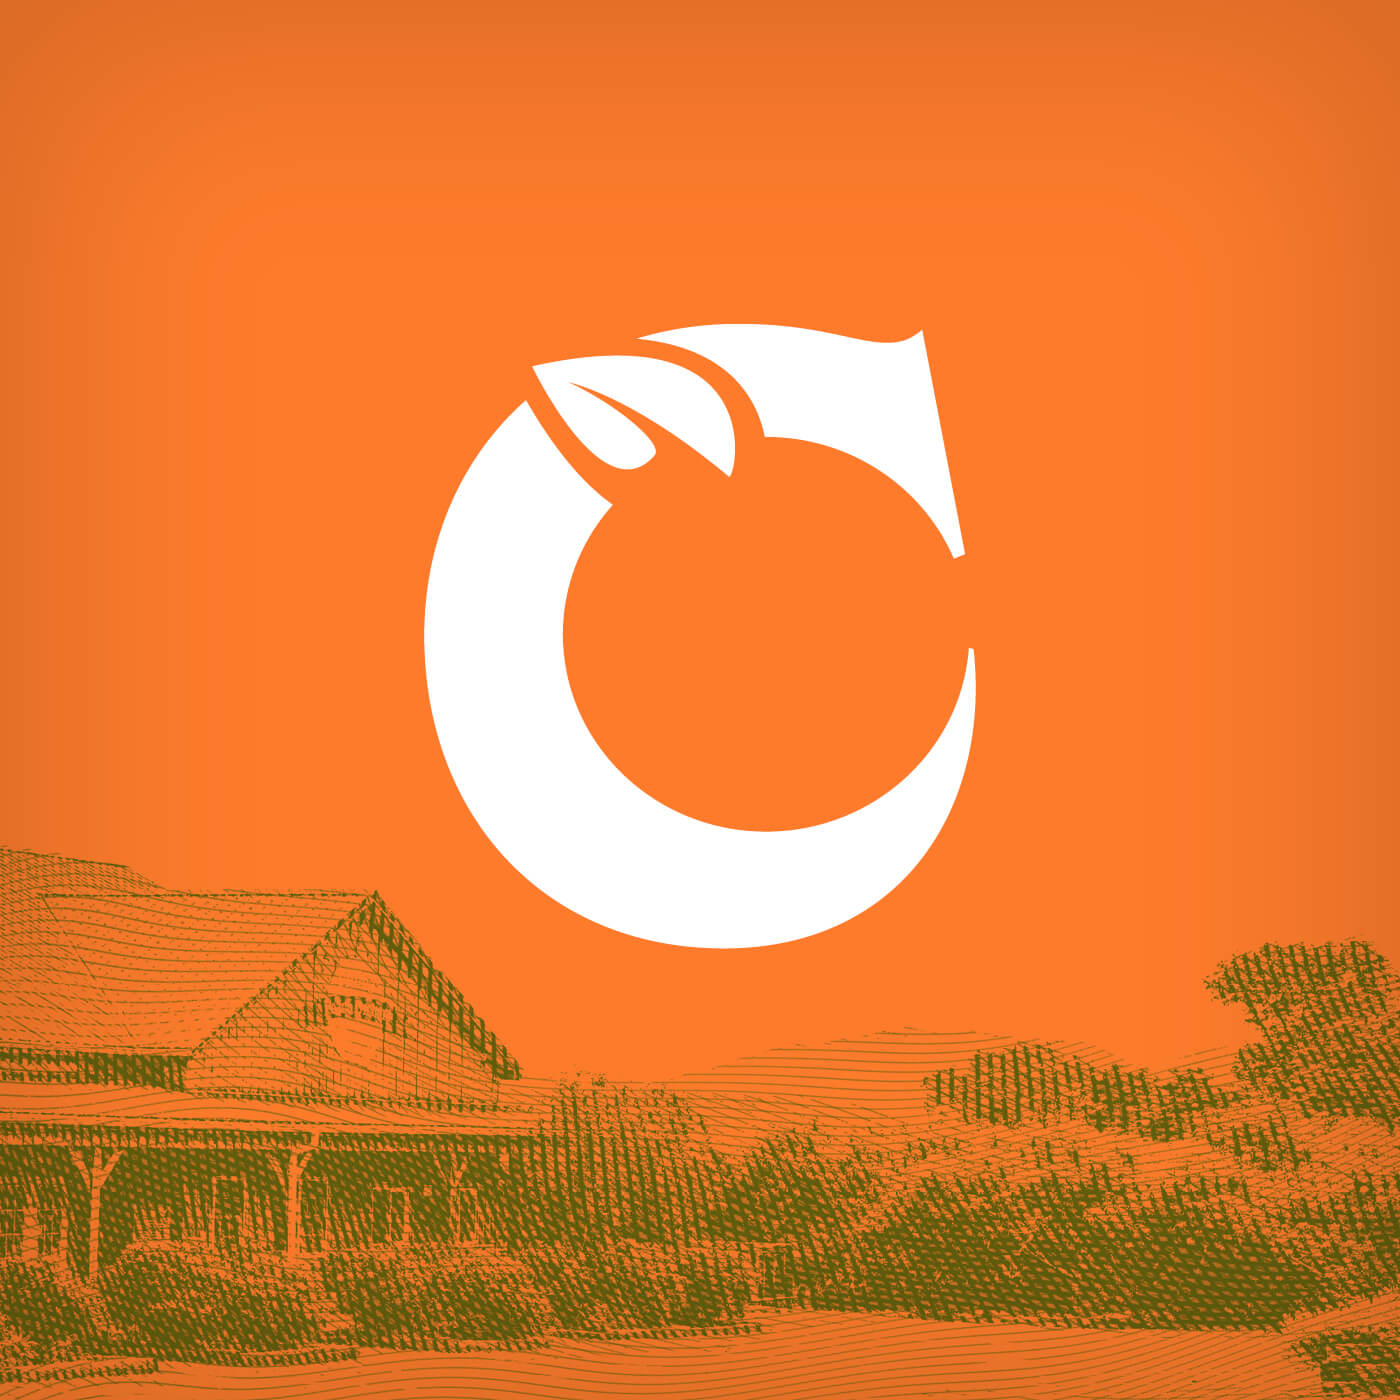 Chiles Peach Orchard new logo in orange icon